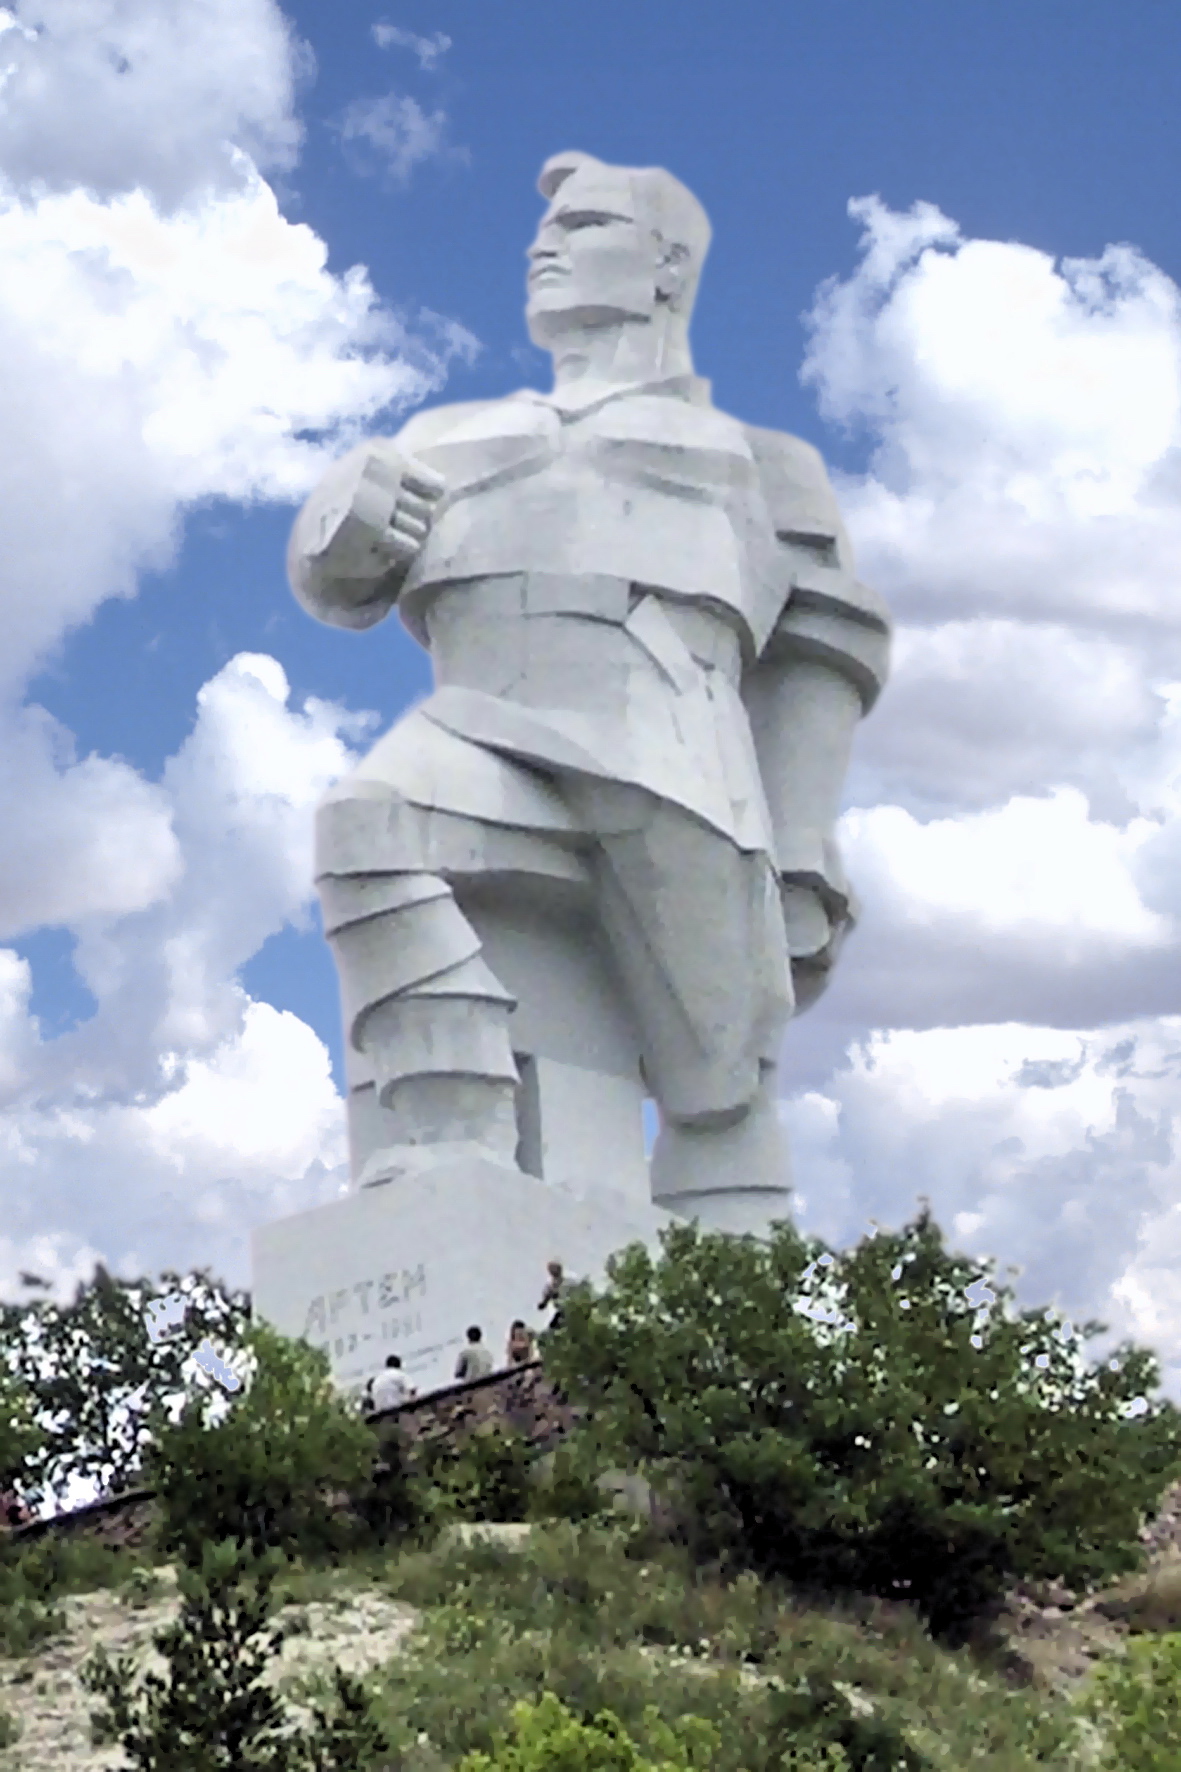 Найбільший у Європі пам'ятник більшовику Артему у стилі кубізму під декомунізацію не потрапив. Фото: SGIAZ - власна робота, CC BY-SA 4.0, https://commons.wikimedia.org/w/index.php?curid=62444036